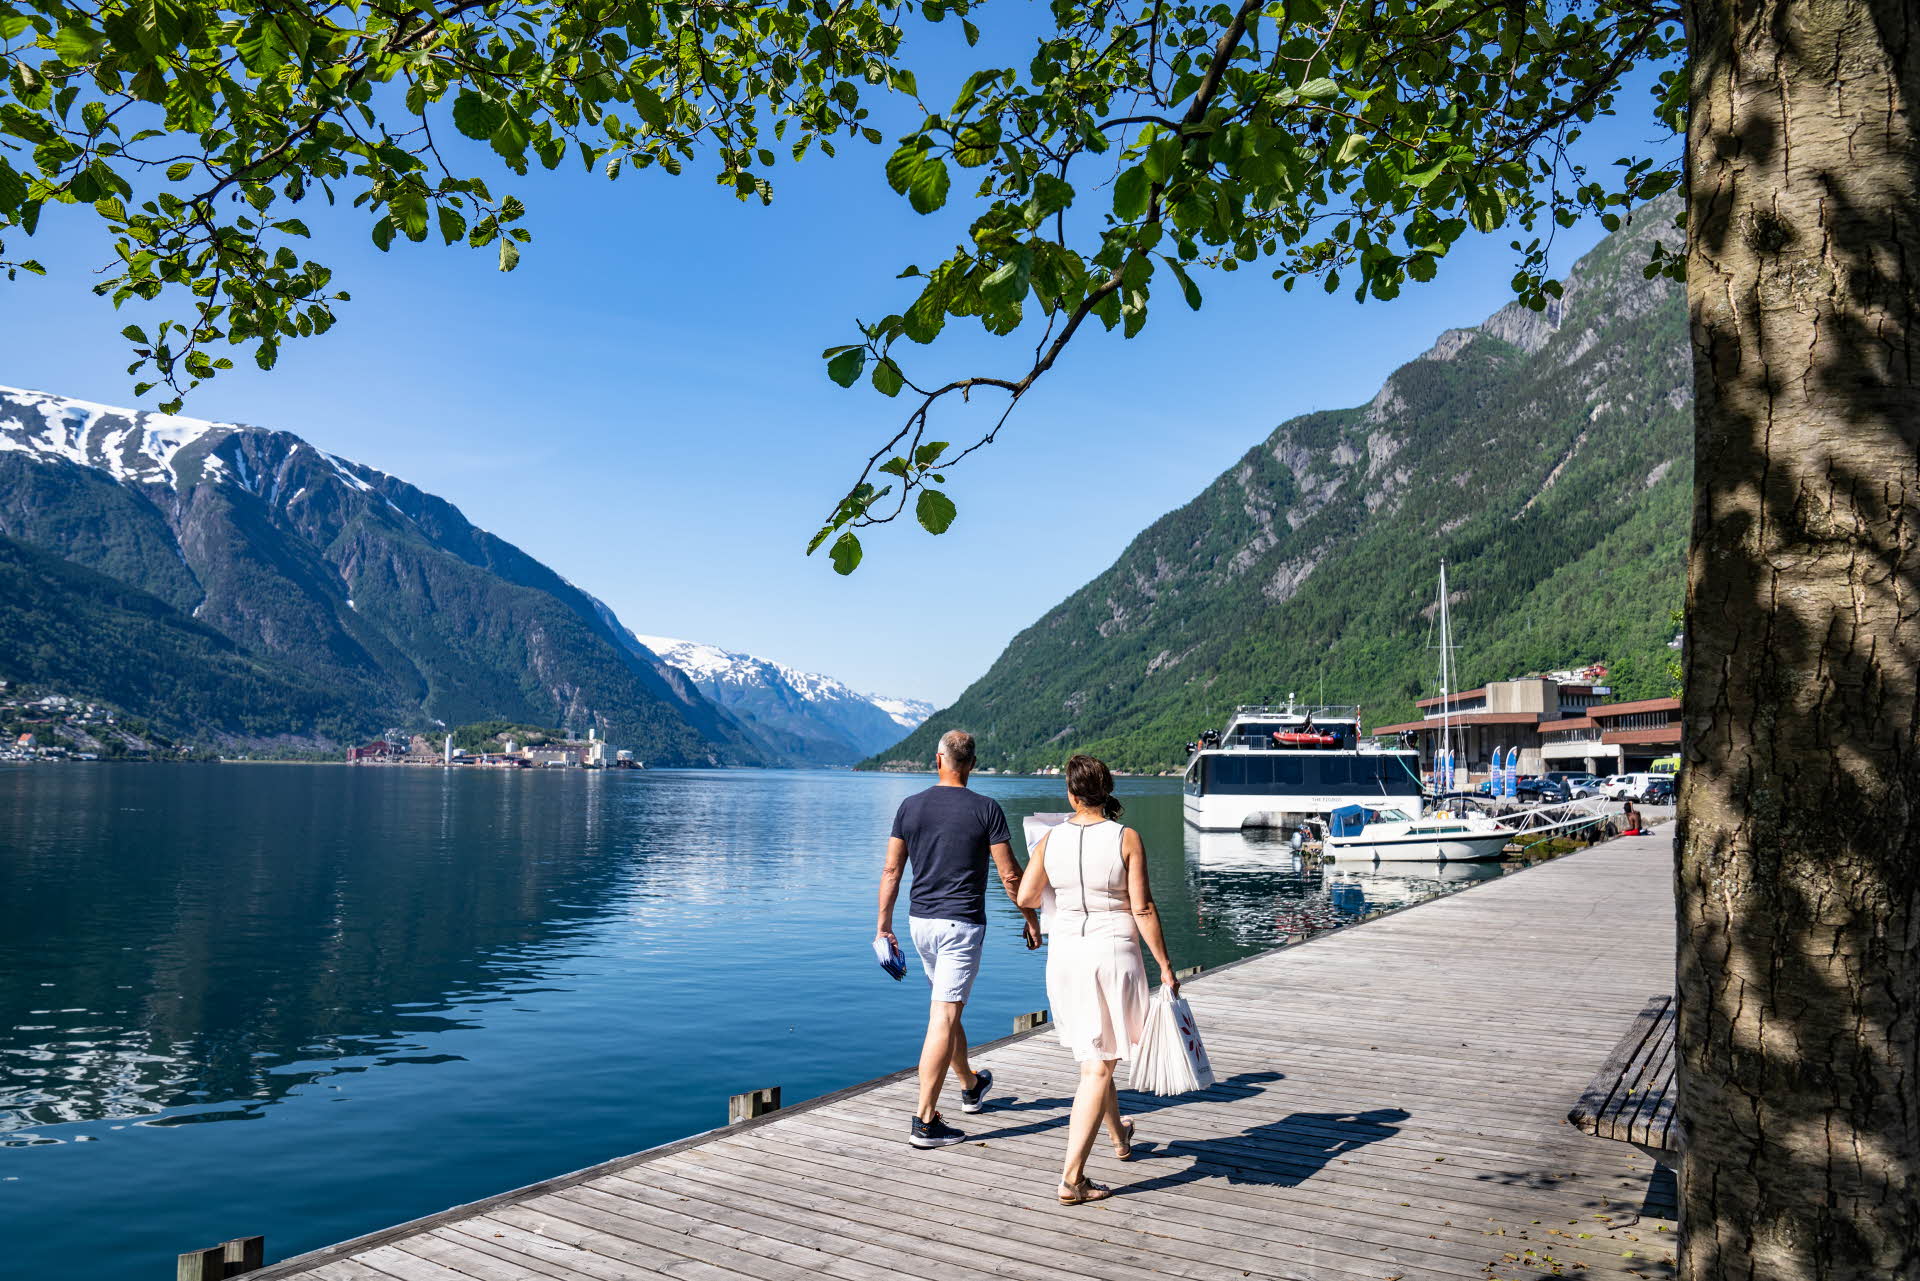 Un couple se tenant la main en marchant sur un quai au bord du Hardangerfjord. Des feuilles de bouleau au-dessus, des bateaux devant et des montagnes aux sommets enneigés en arrière-plan.